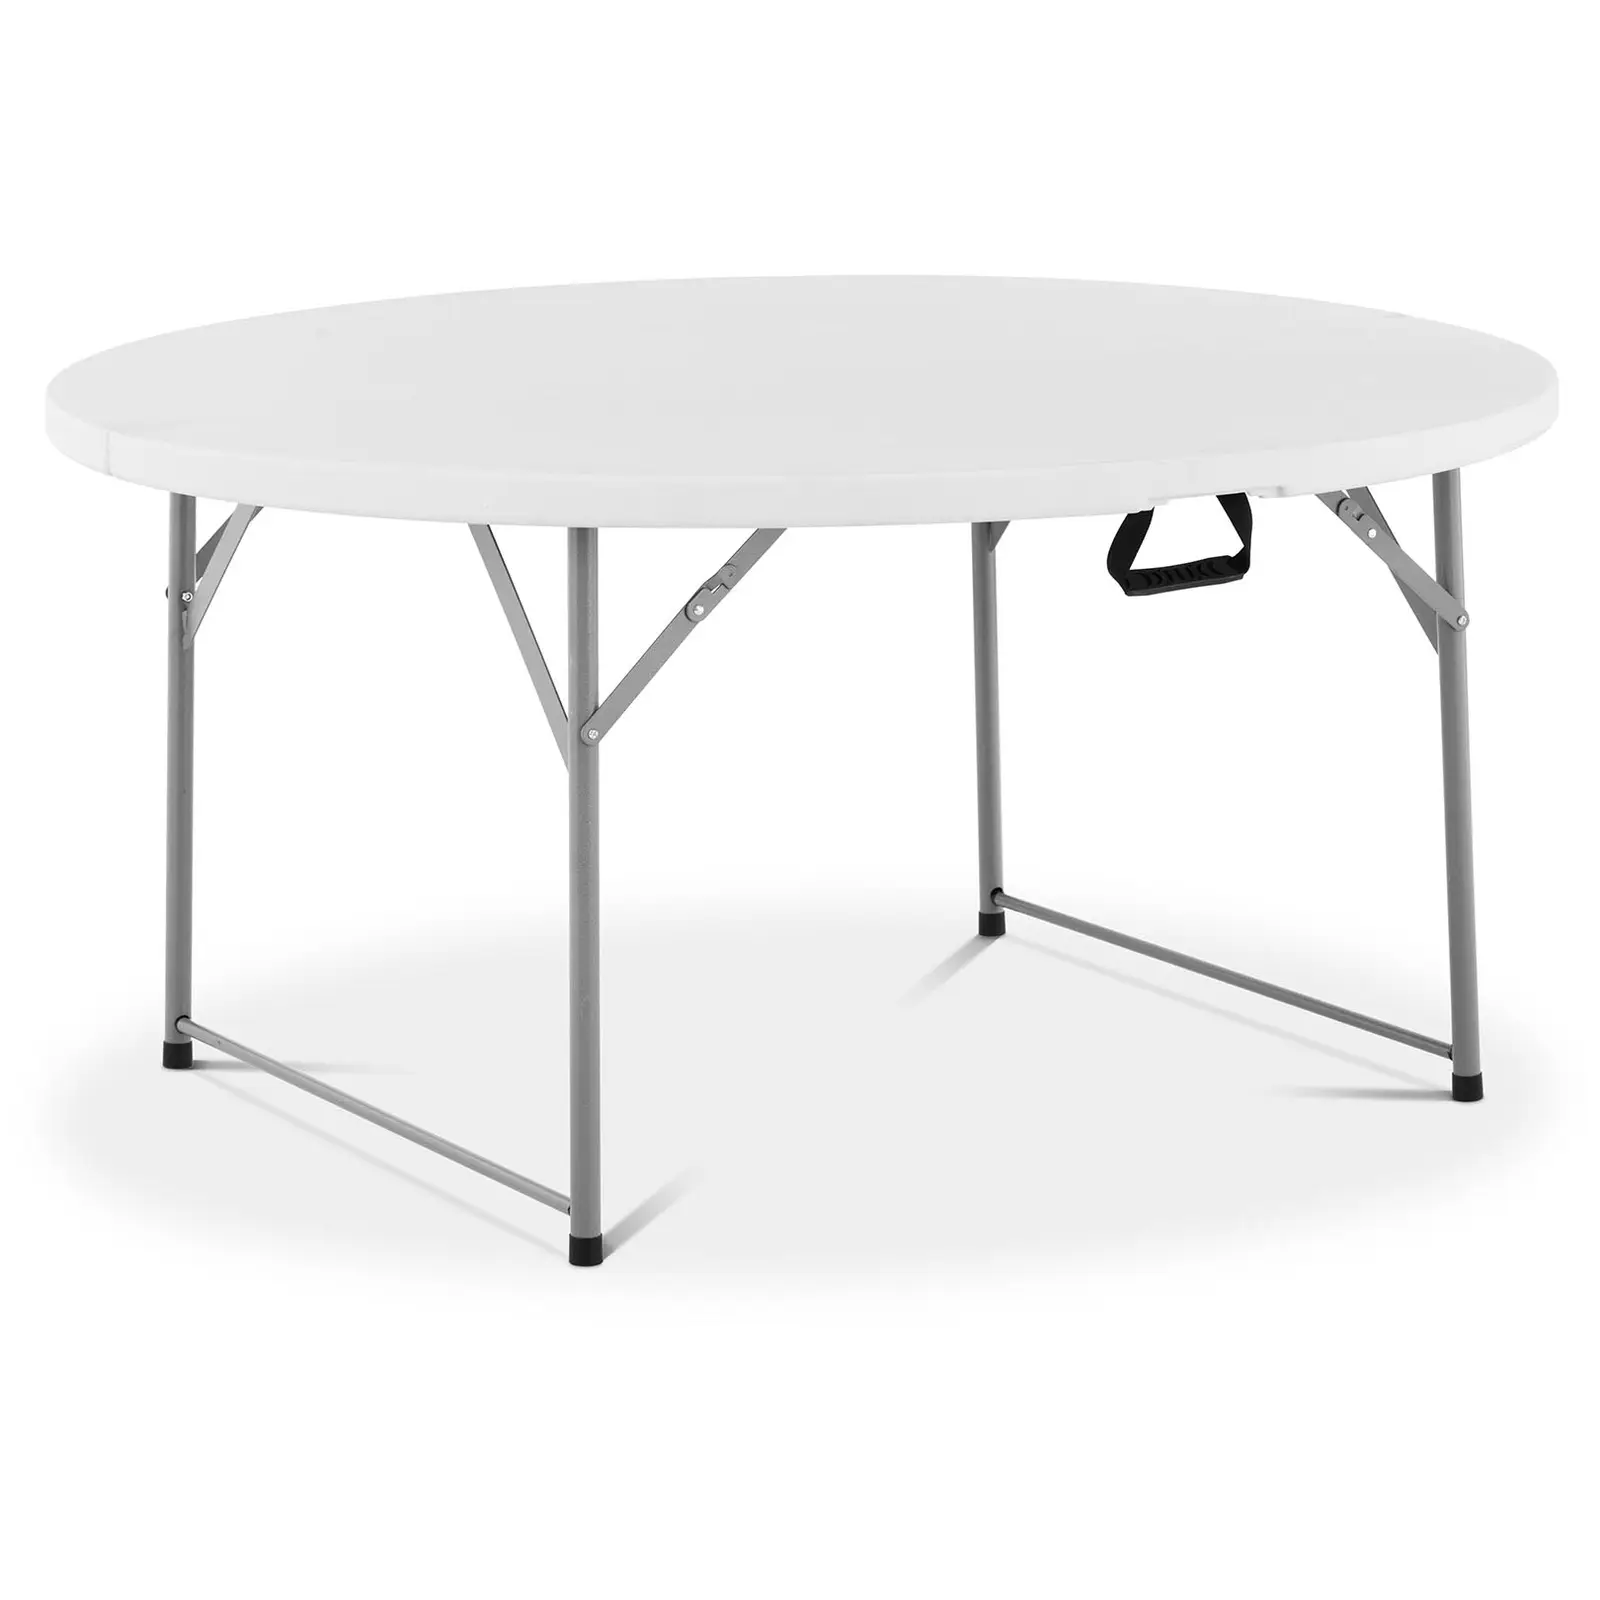 Okrogla zložljiva miza - ⌀ 1,500 x 740 mm - Royal Catering - 150 kg - znotraj/zunaj - White